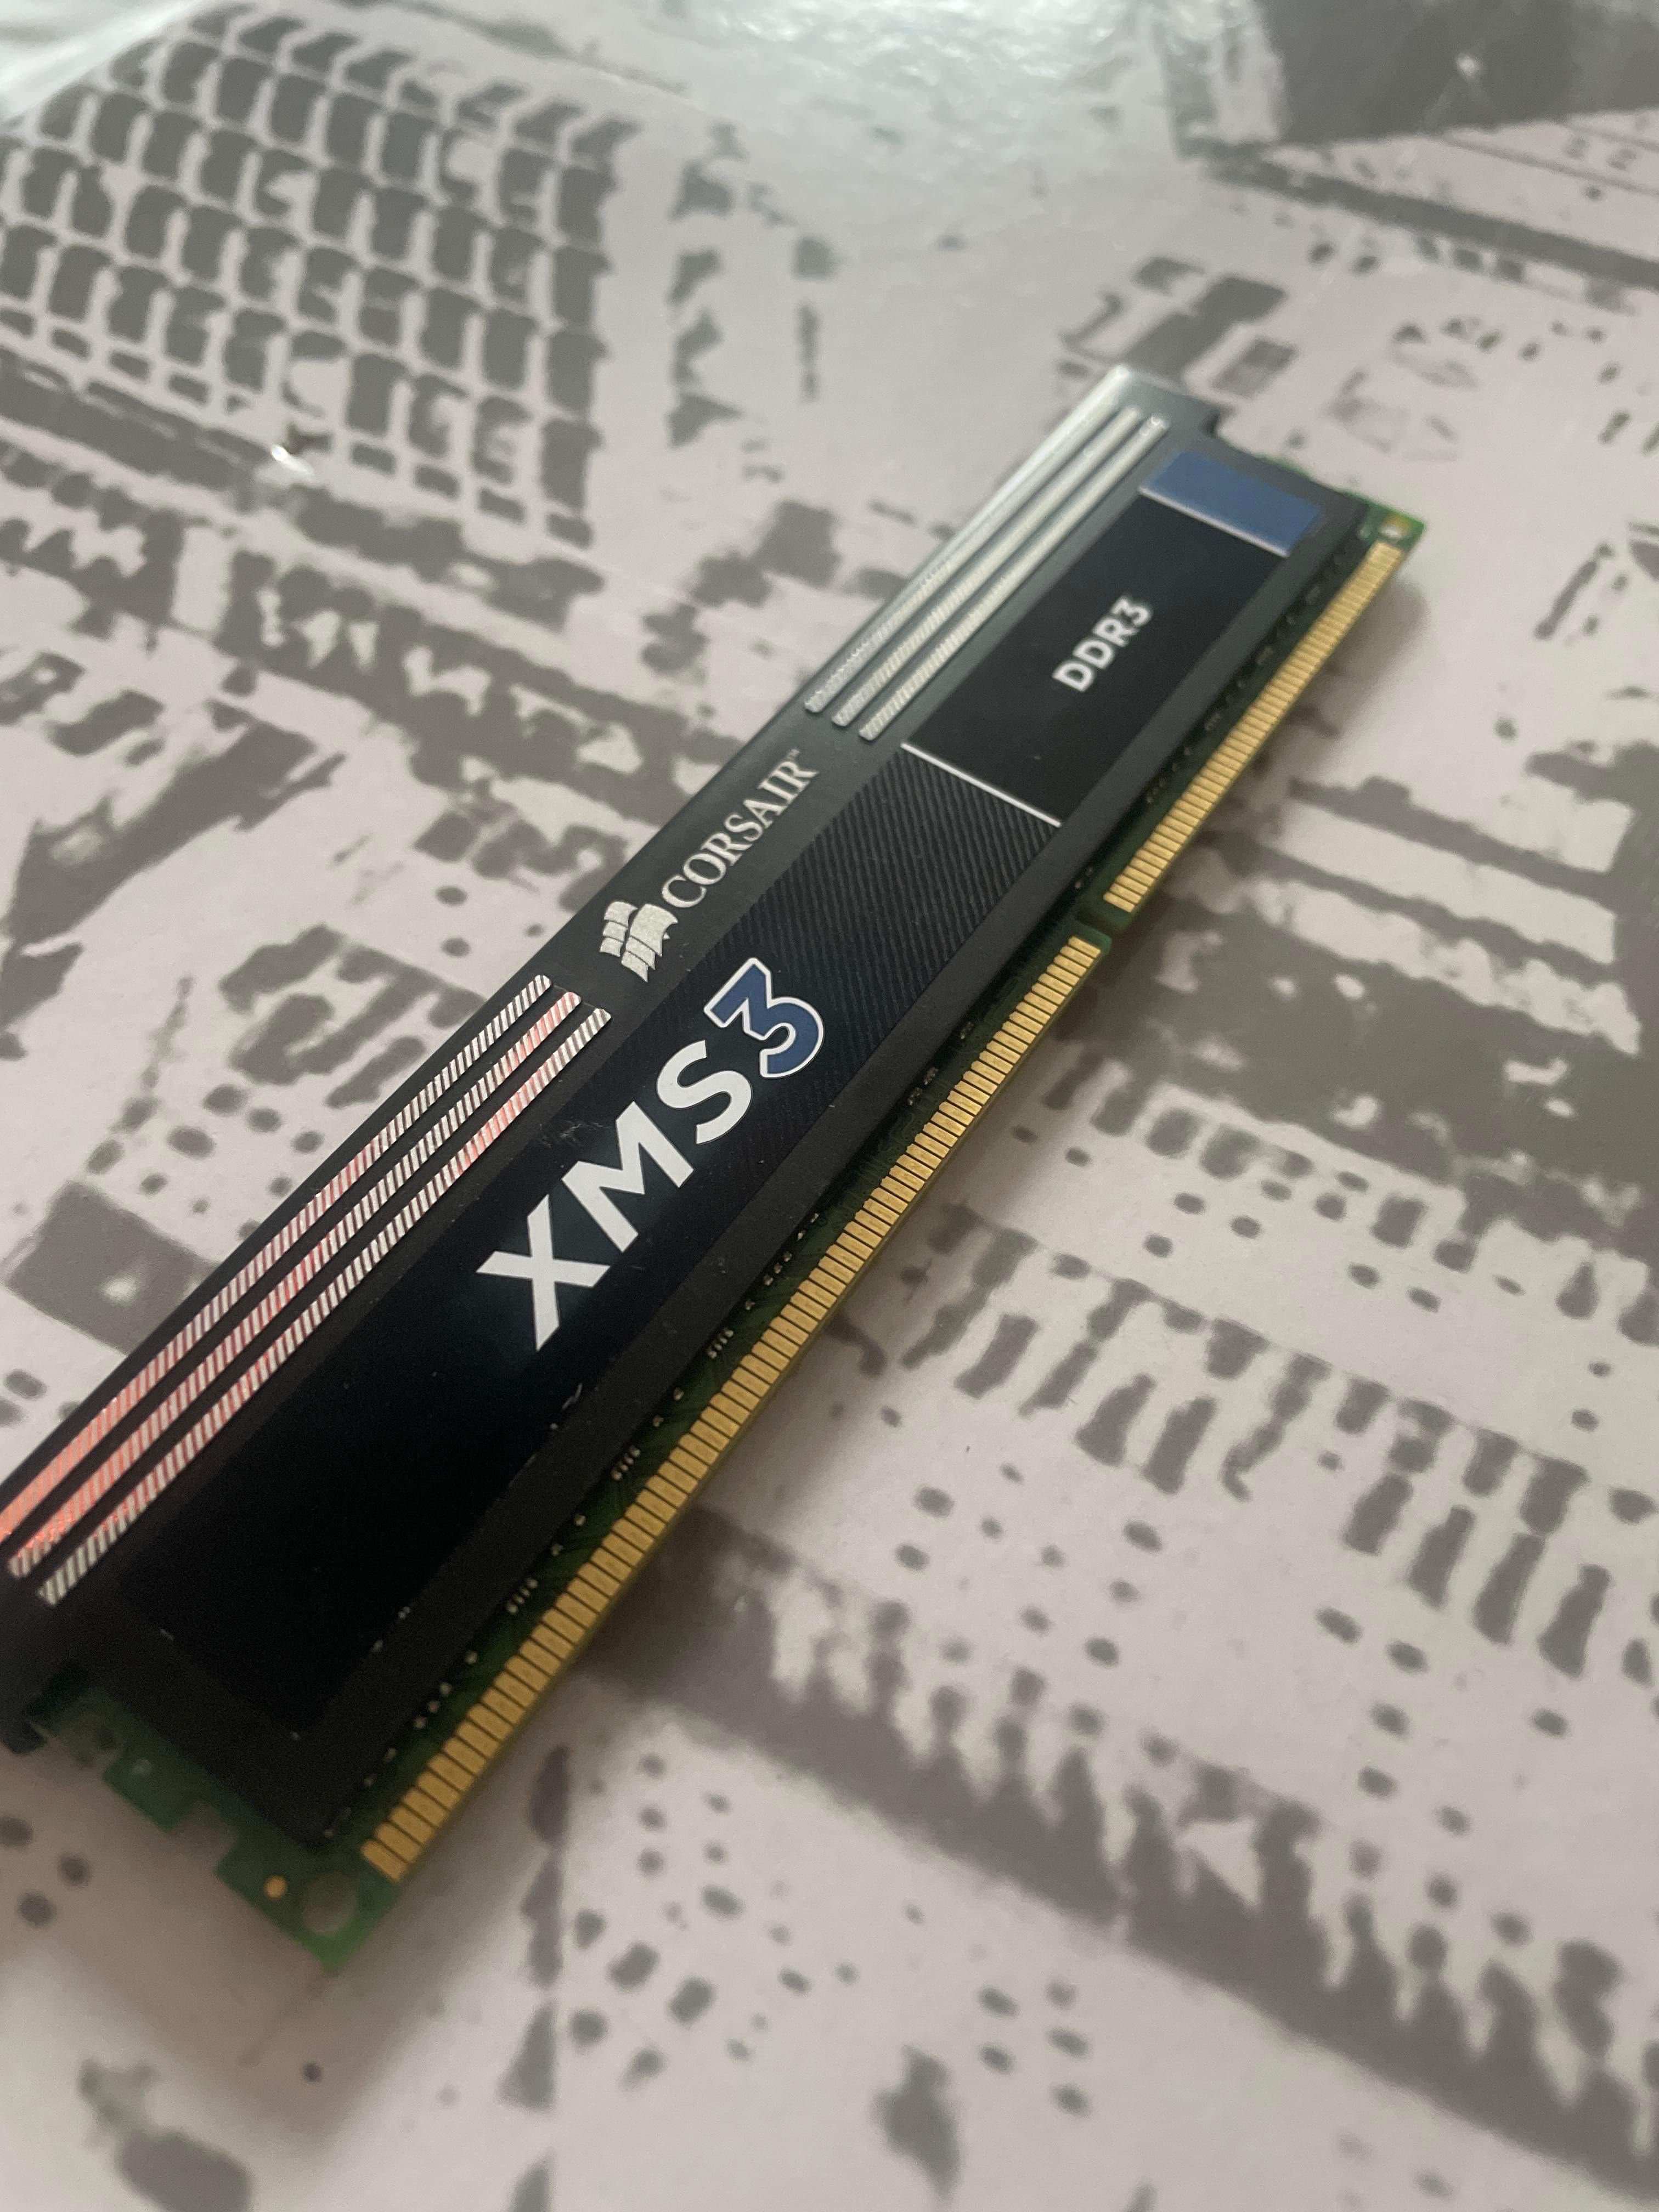 RAM corsair 8gb 1600 MHz xms3 ddr3